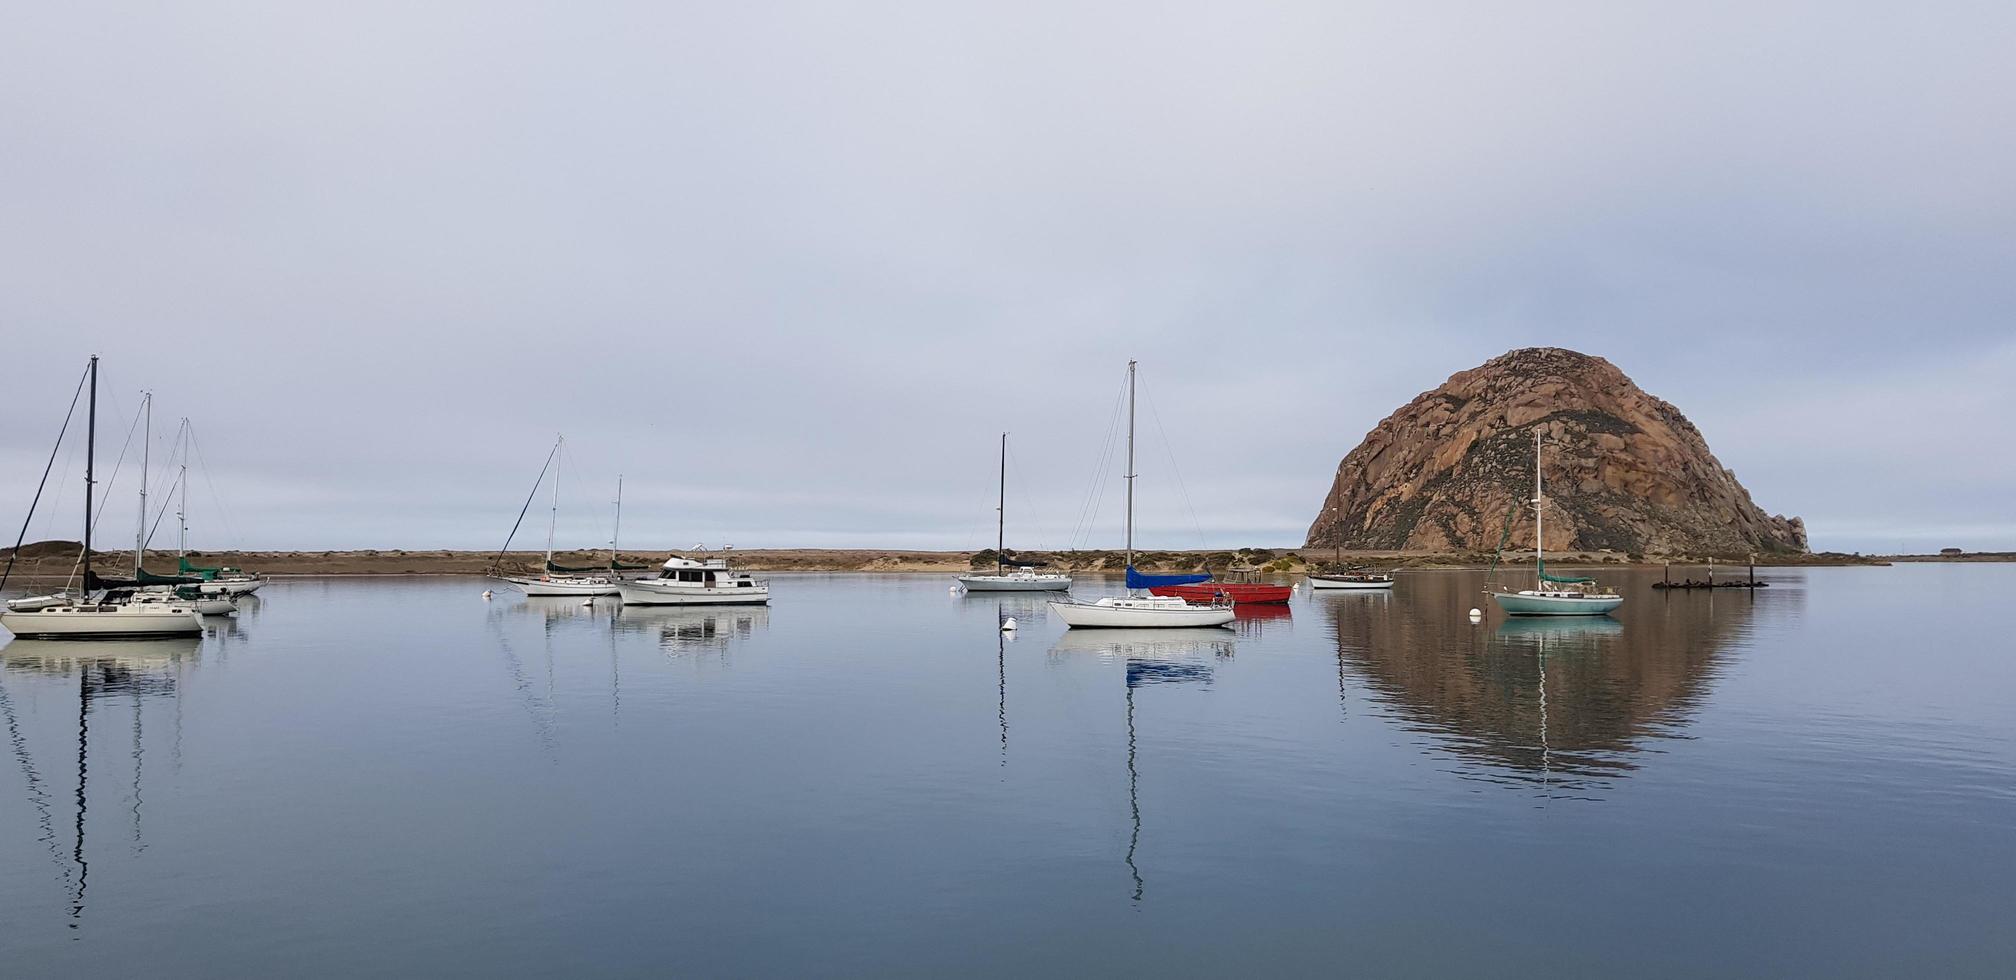 morrow bay, ca, 2020 - temprano en la mañana en el agua foto